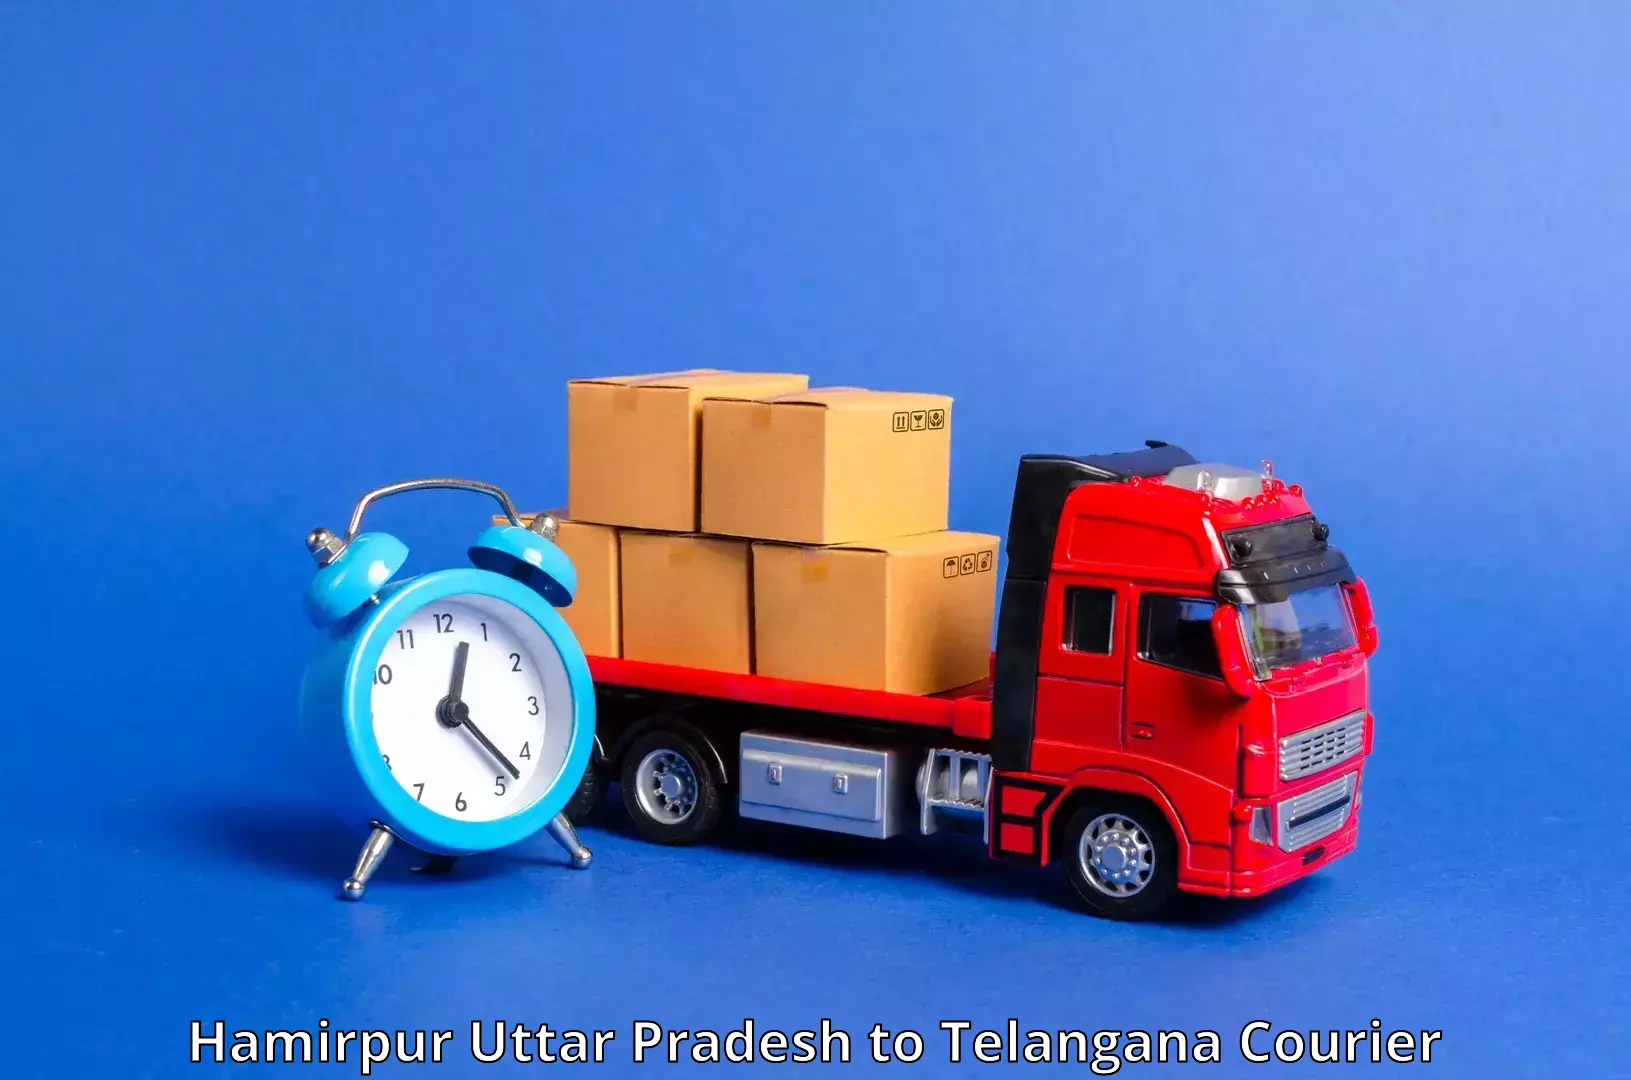 Efficient parcel delivery Hamirpur Uttar Pradesh to Jainoor